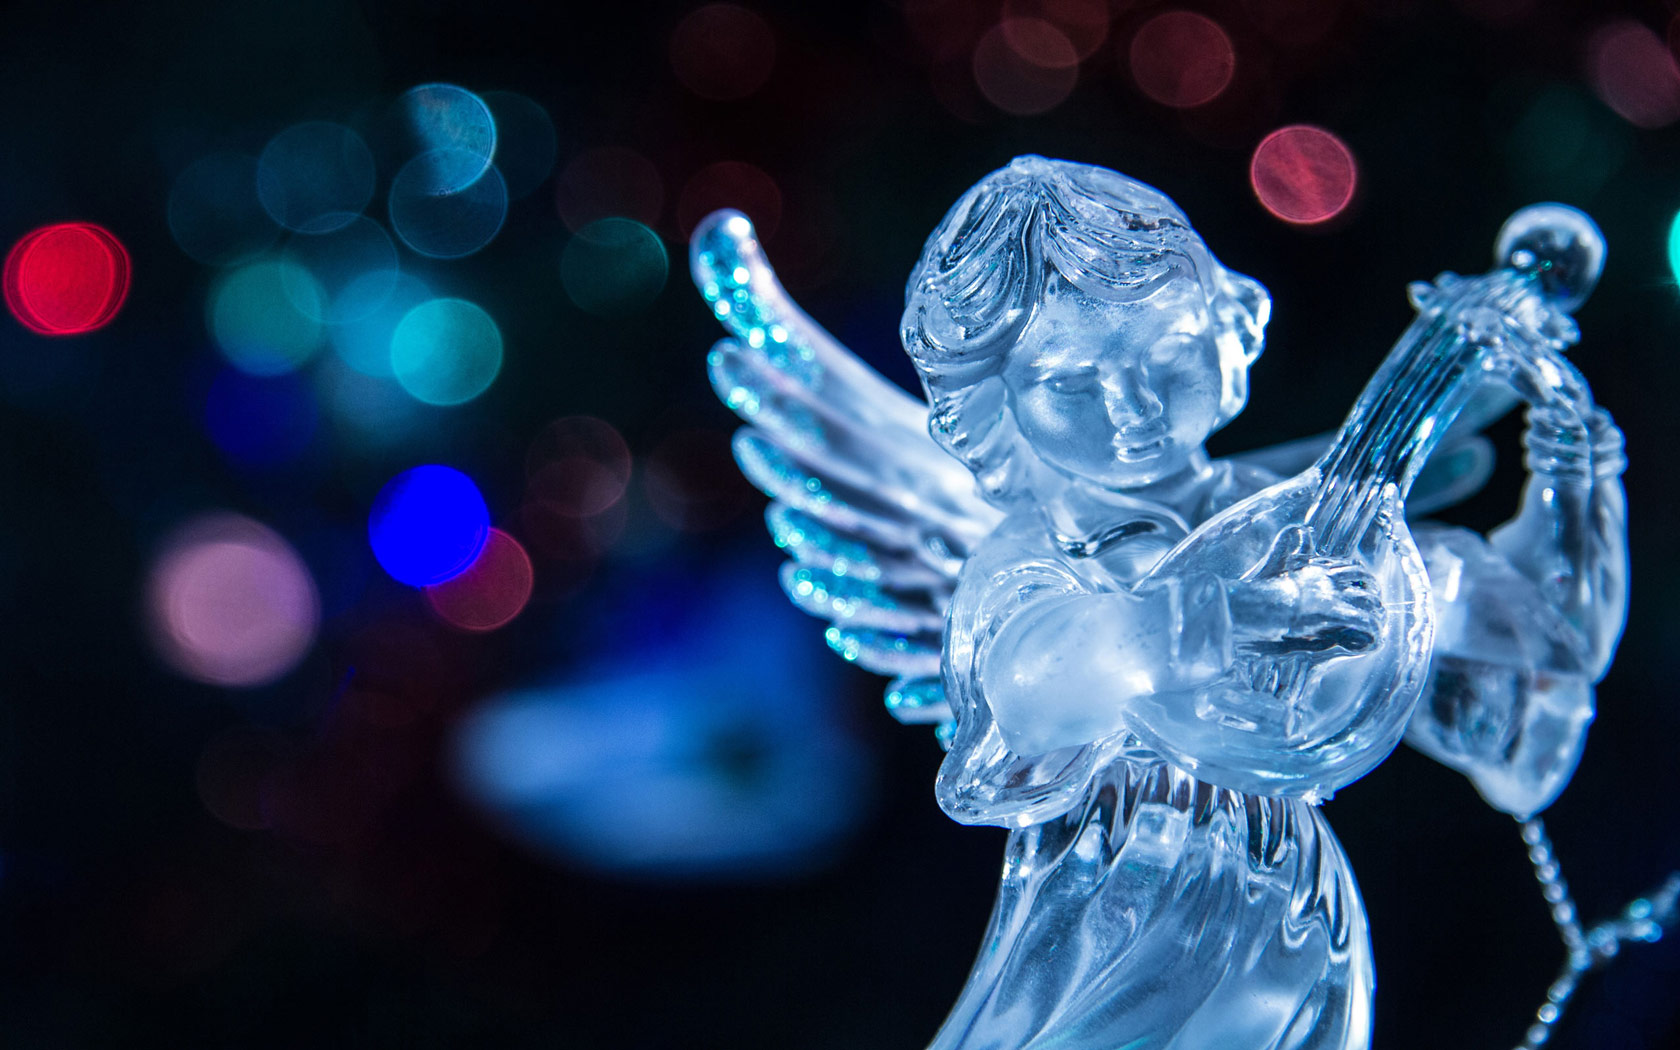 Christmas Angel Puter Desktop Wallpaper Pictures Image